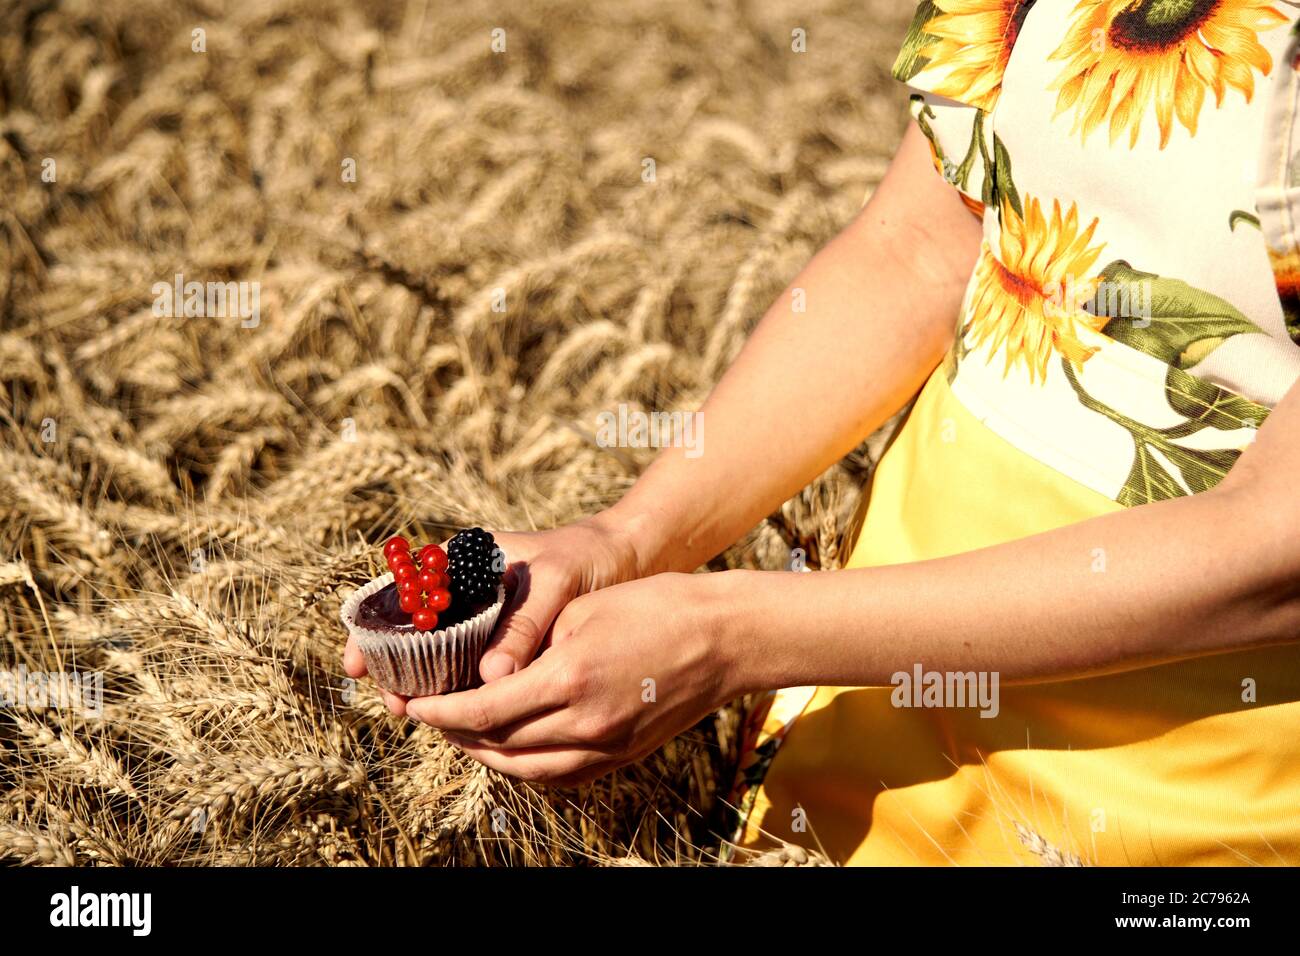 Mädchen hält einen Schokoladenmuffin mit Früchten verziert. Food-Fotografie. Stockfoto